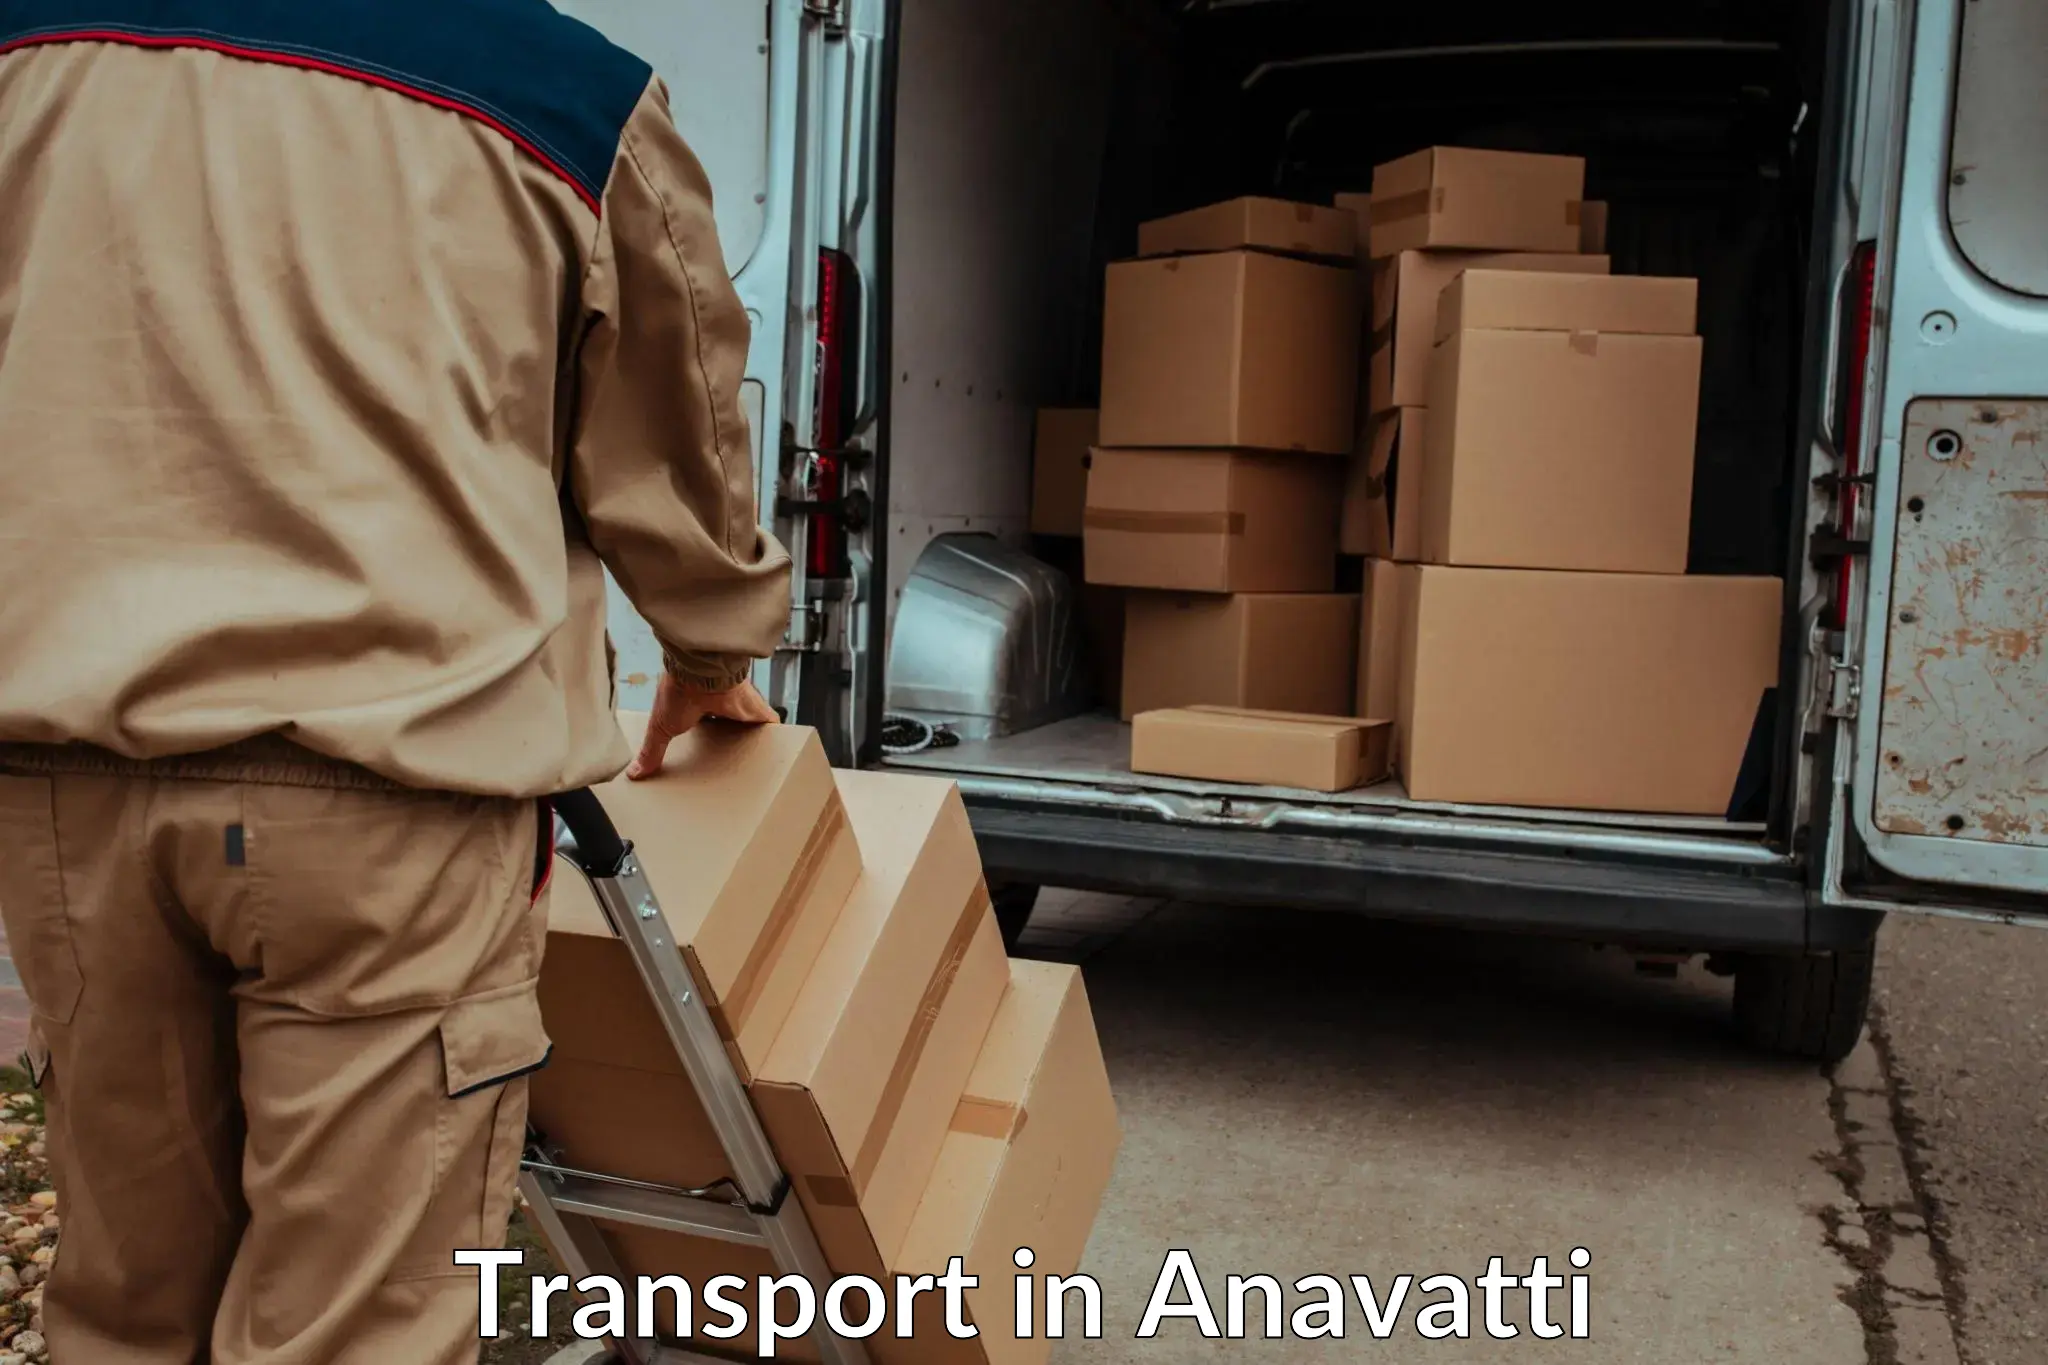 Interstate transport services in Anavatti